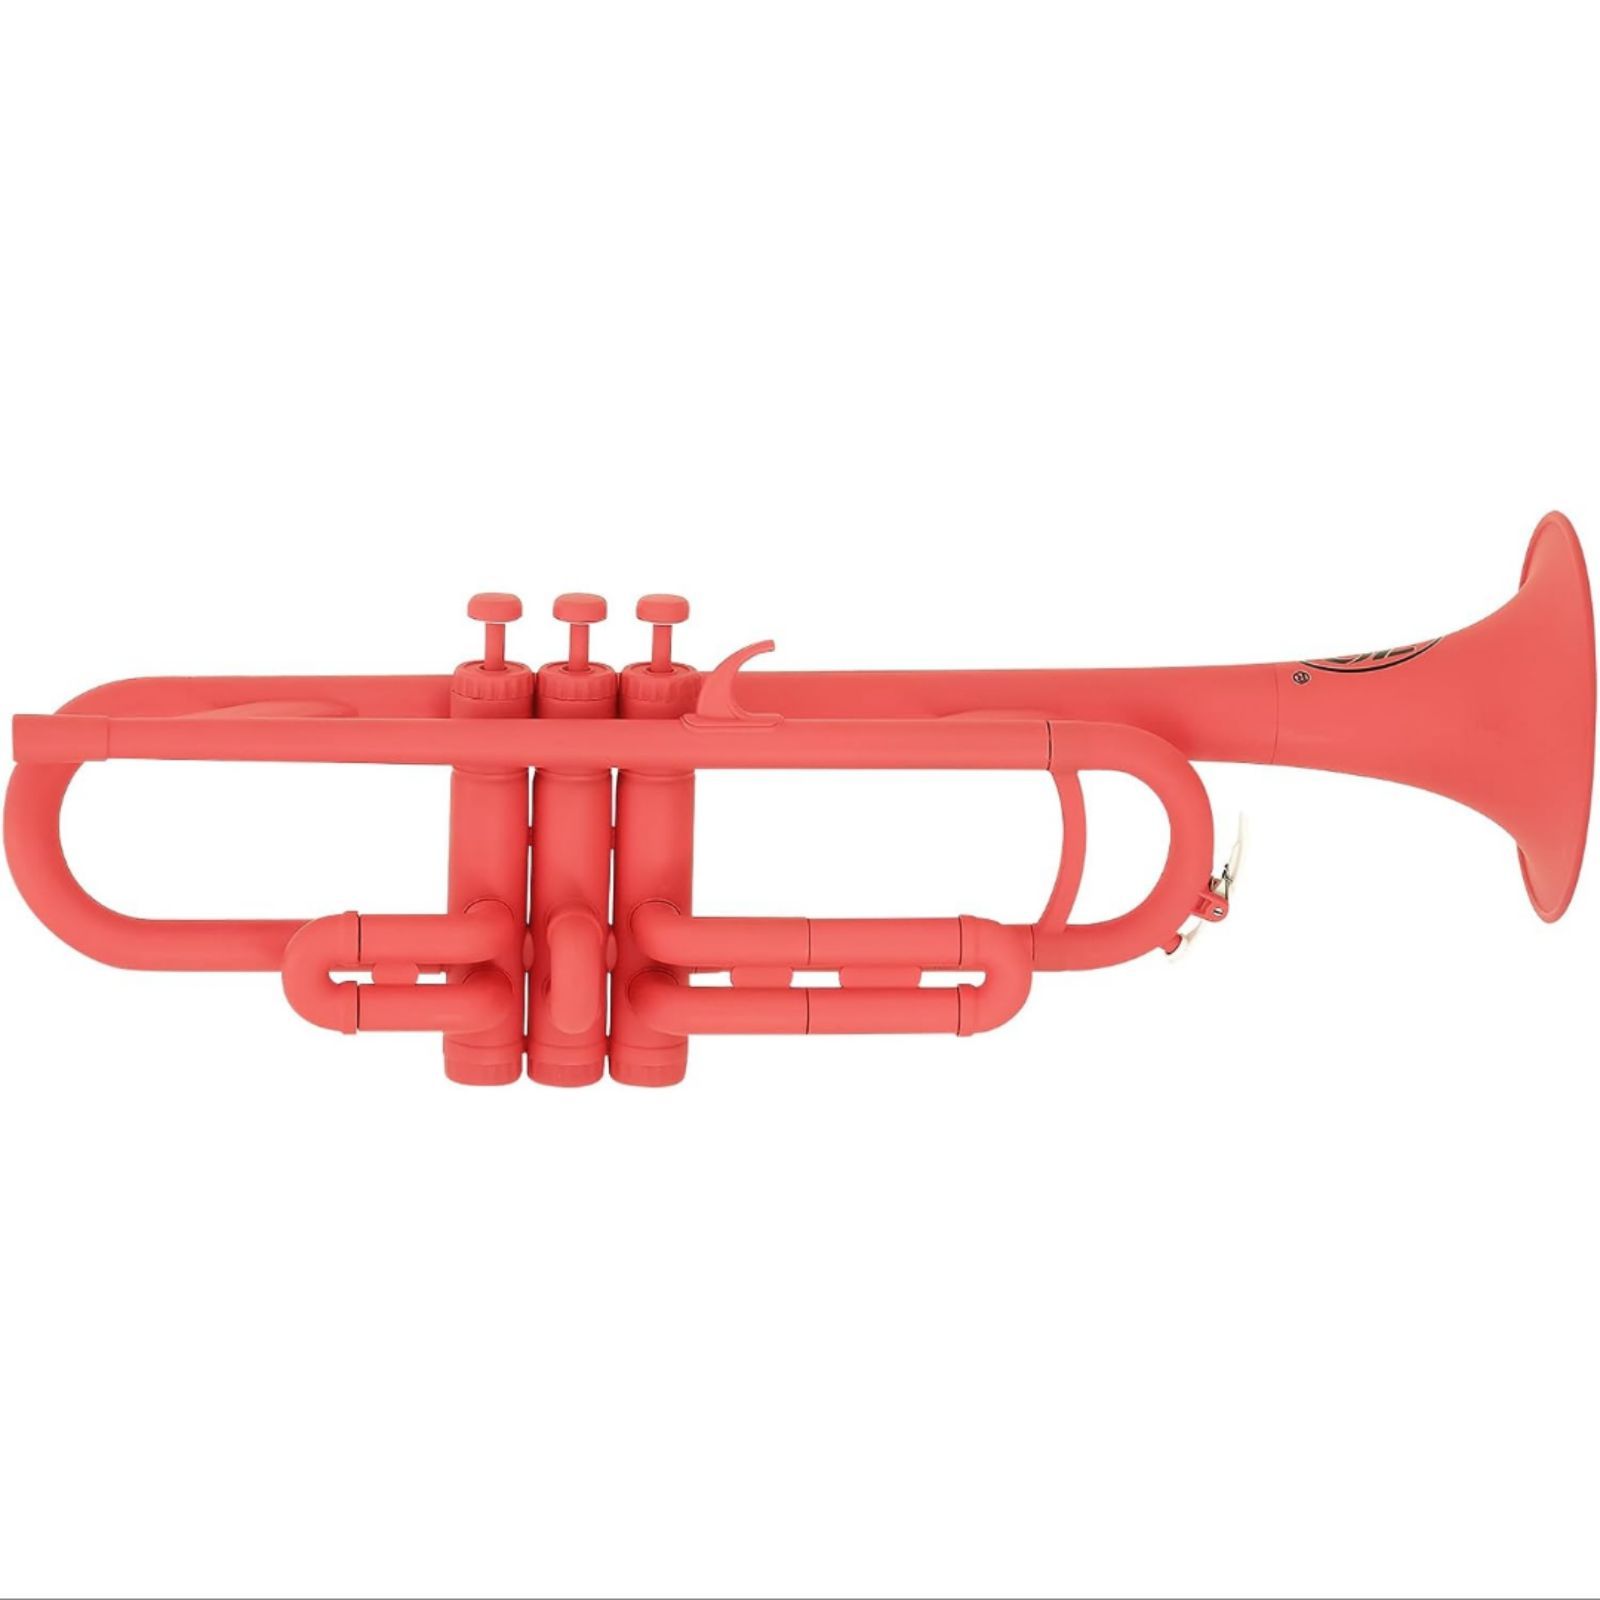 ZO(ゼット・オー) プラスチック管楽器 【トランペット】ピンク TP-14